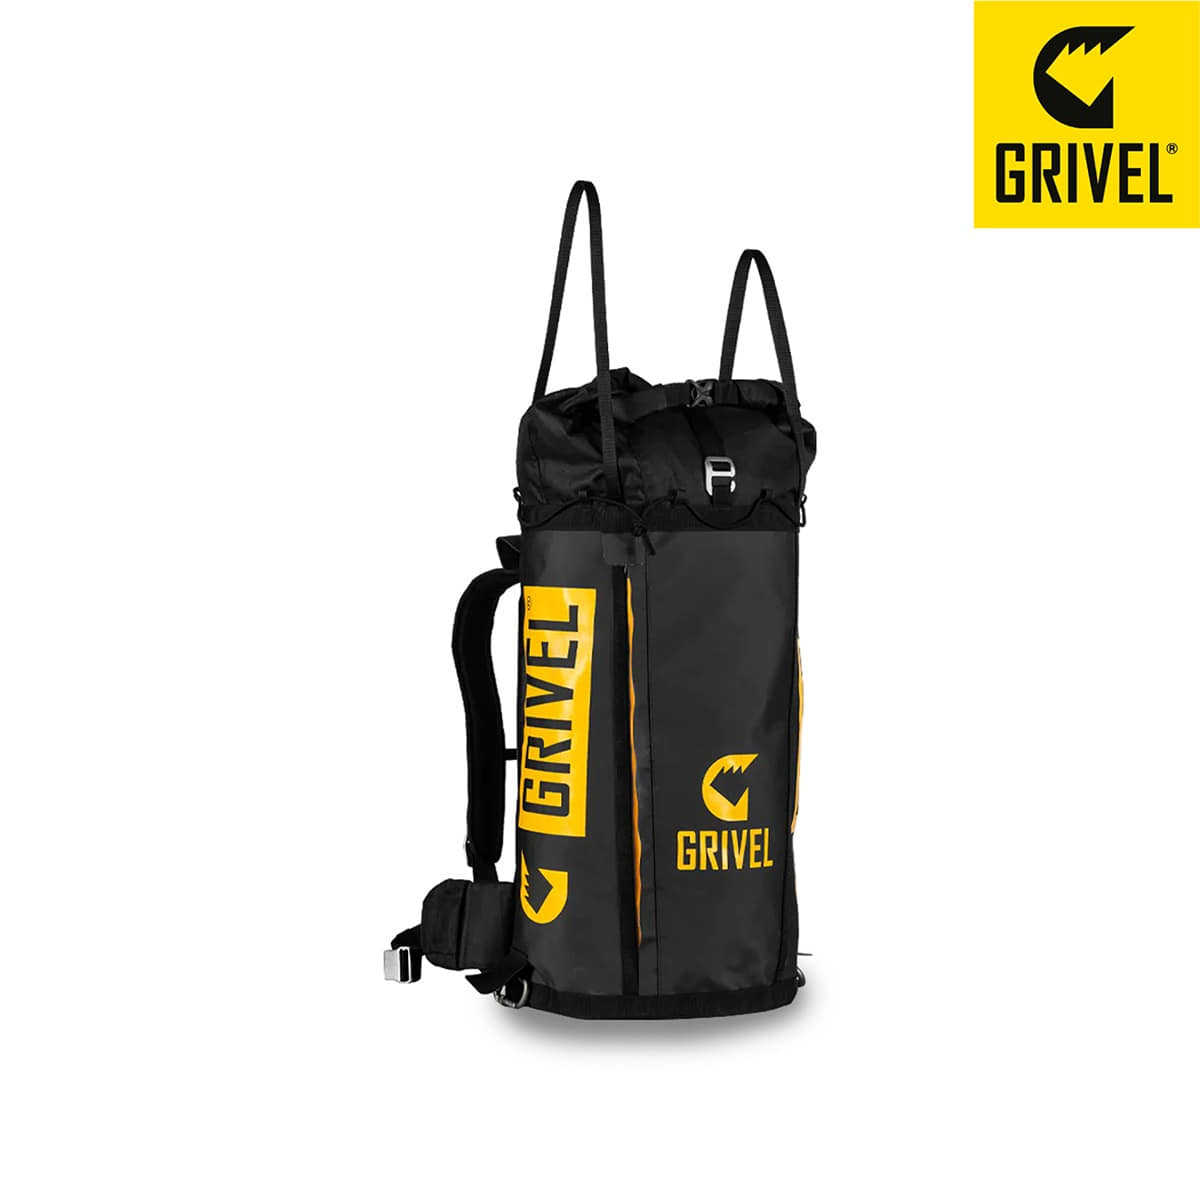 그리벨 등반용 방수 백팩 그랜드캡 40리터 backpack GRAND CAP 40